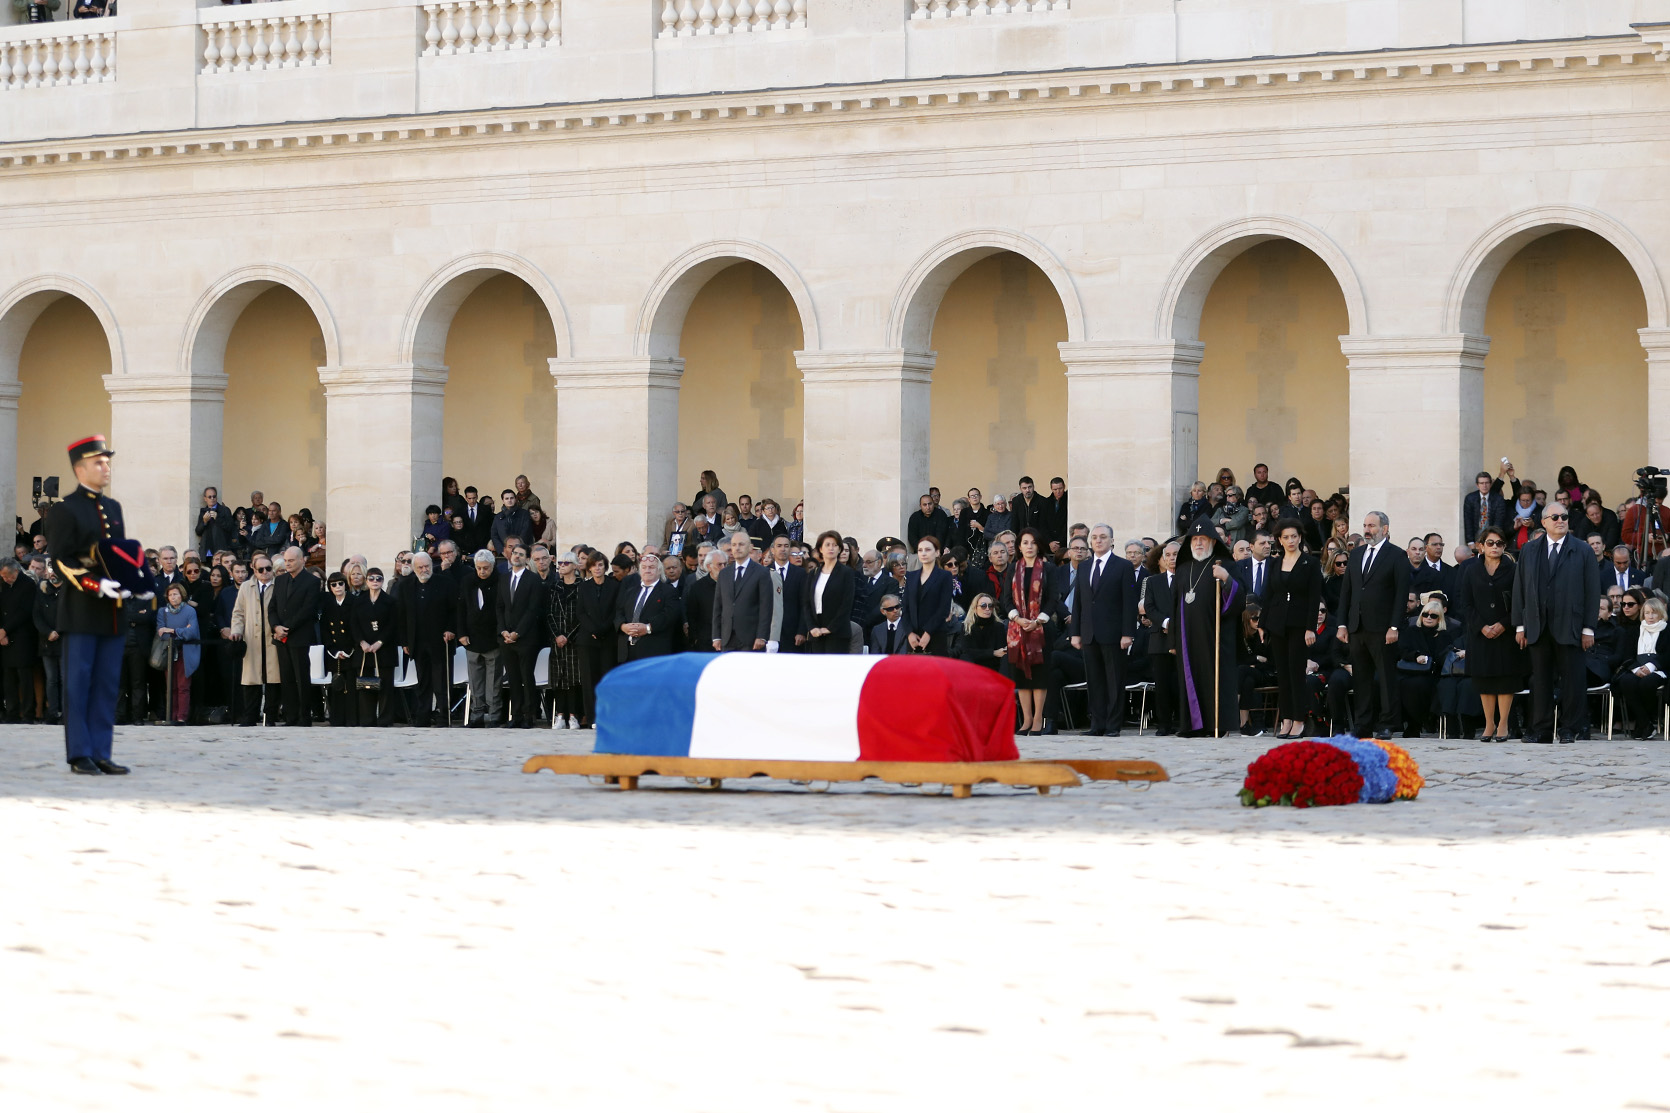 Похоронен во франции. Азнавур похороны. Похороны во Франции. Похороны Азнавура в Париже.